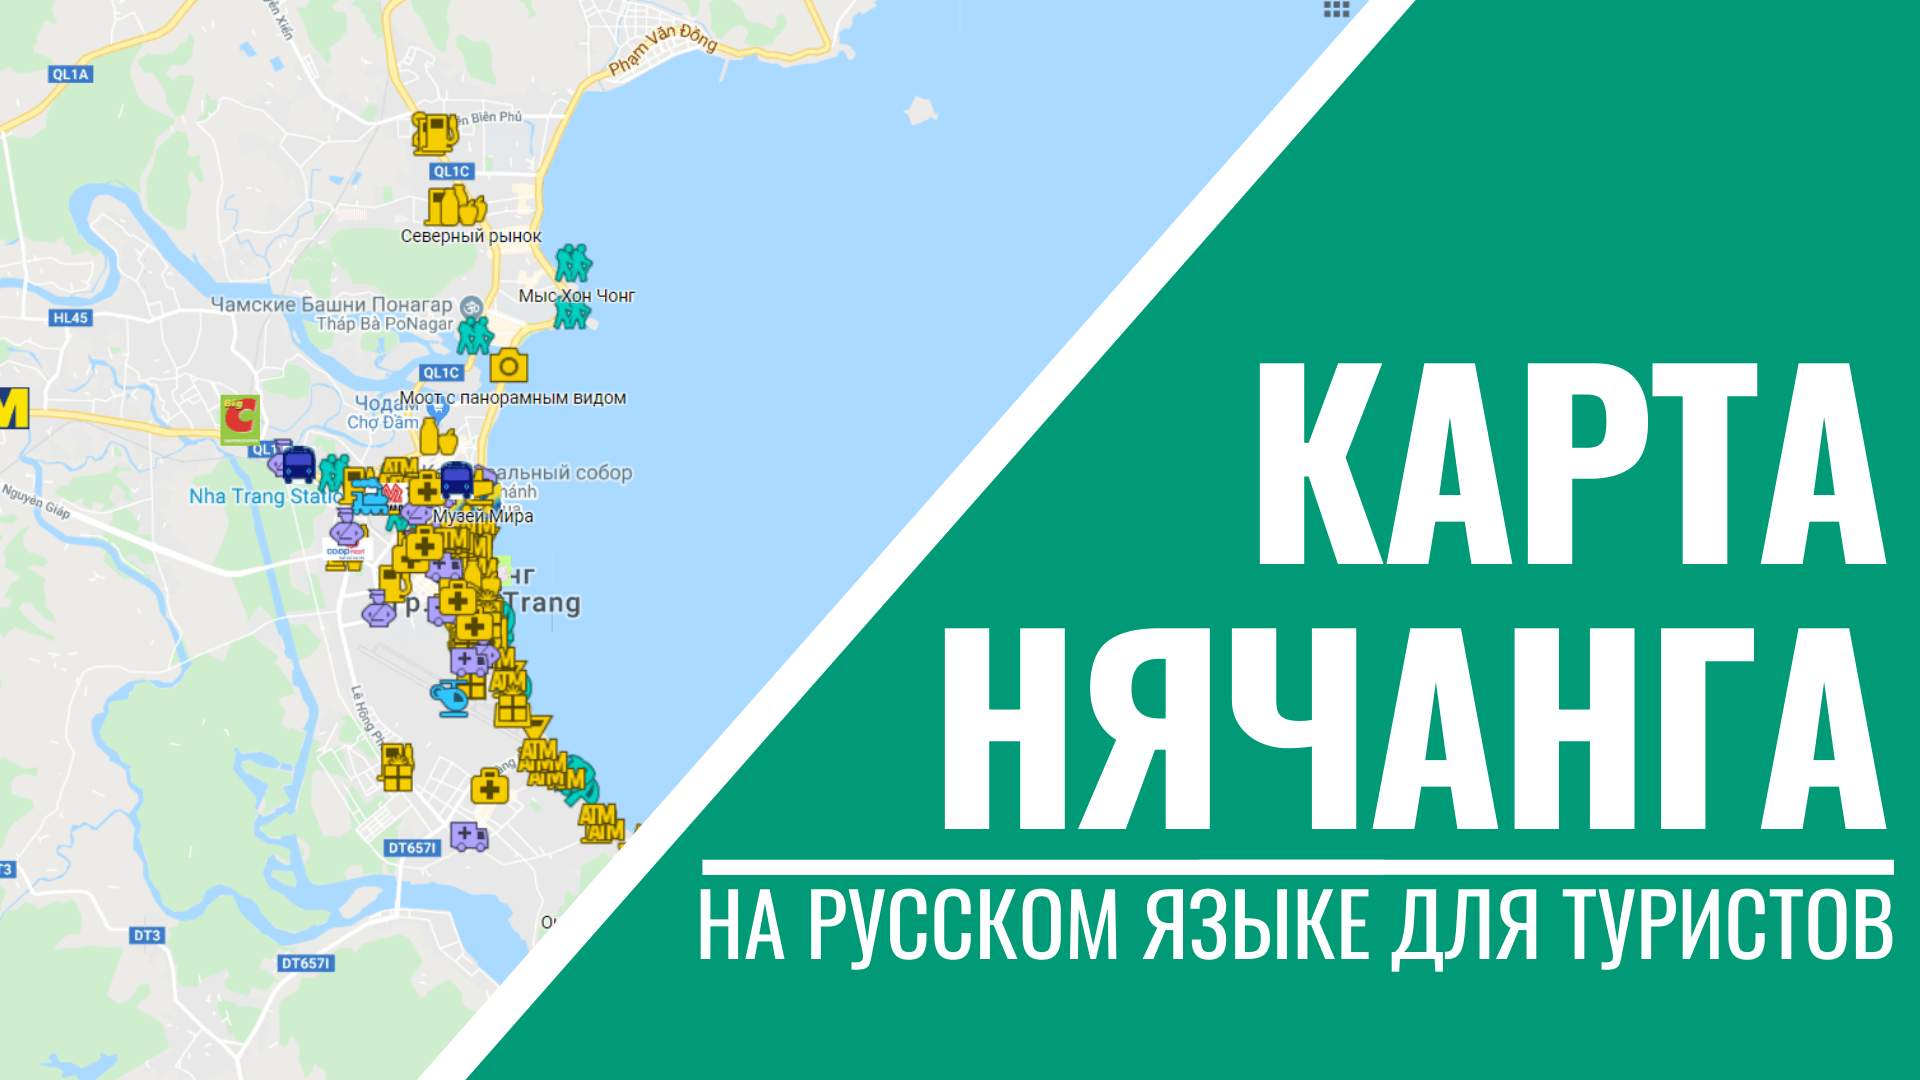 Подробная карта Нячанга на русском языке